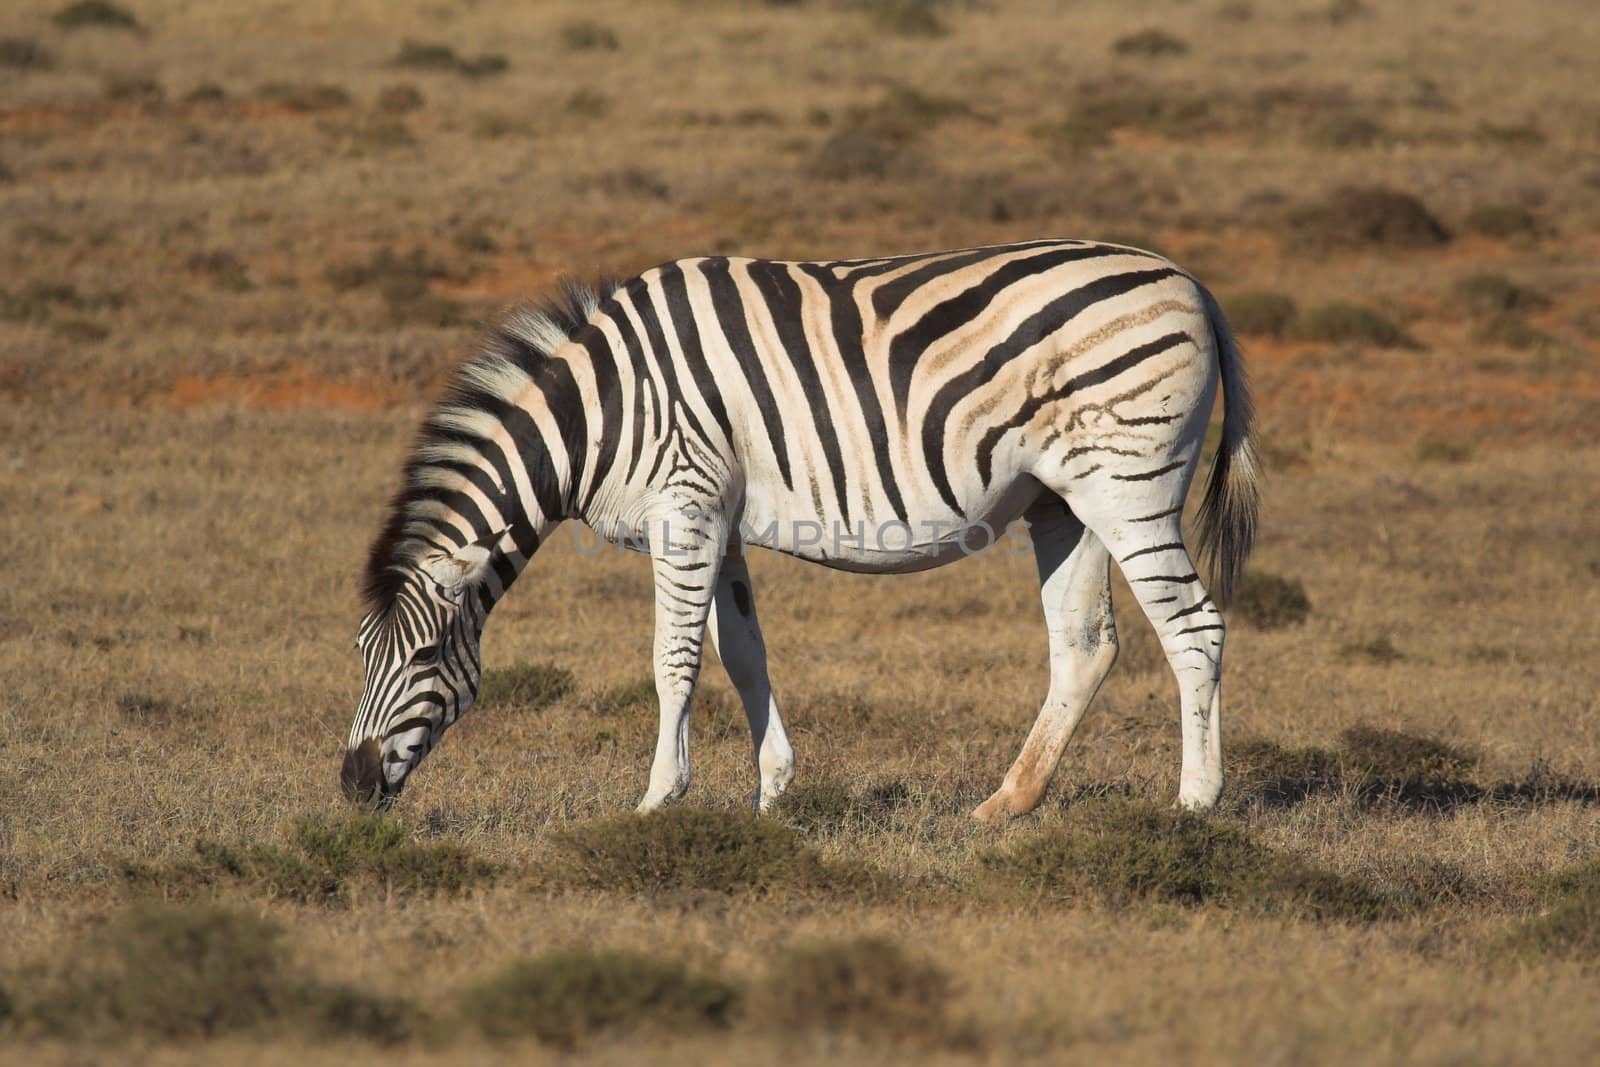 Zebra Feeding on the grass plains of Africa